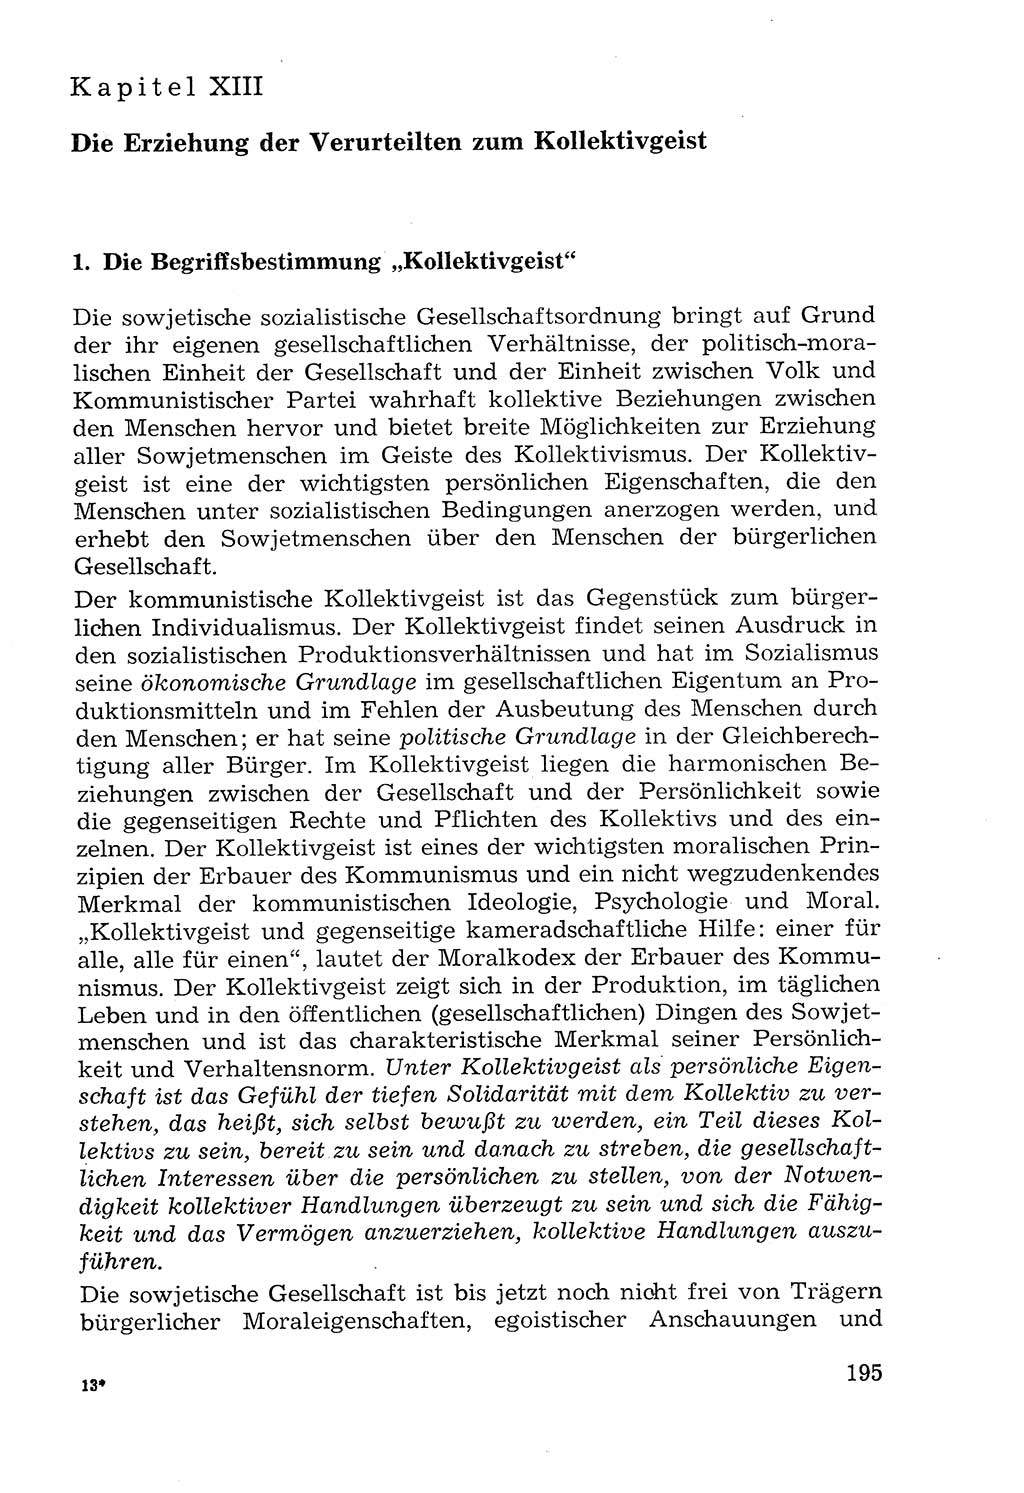 Lehrbuch der Strafvollzugspädagogik [Deutsche Demokratische Republik (DDR)] 1969, Seite 195 (Lb. SV-Pd. DDR 1969, S. 195)